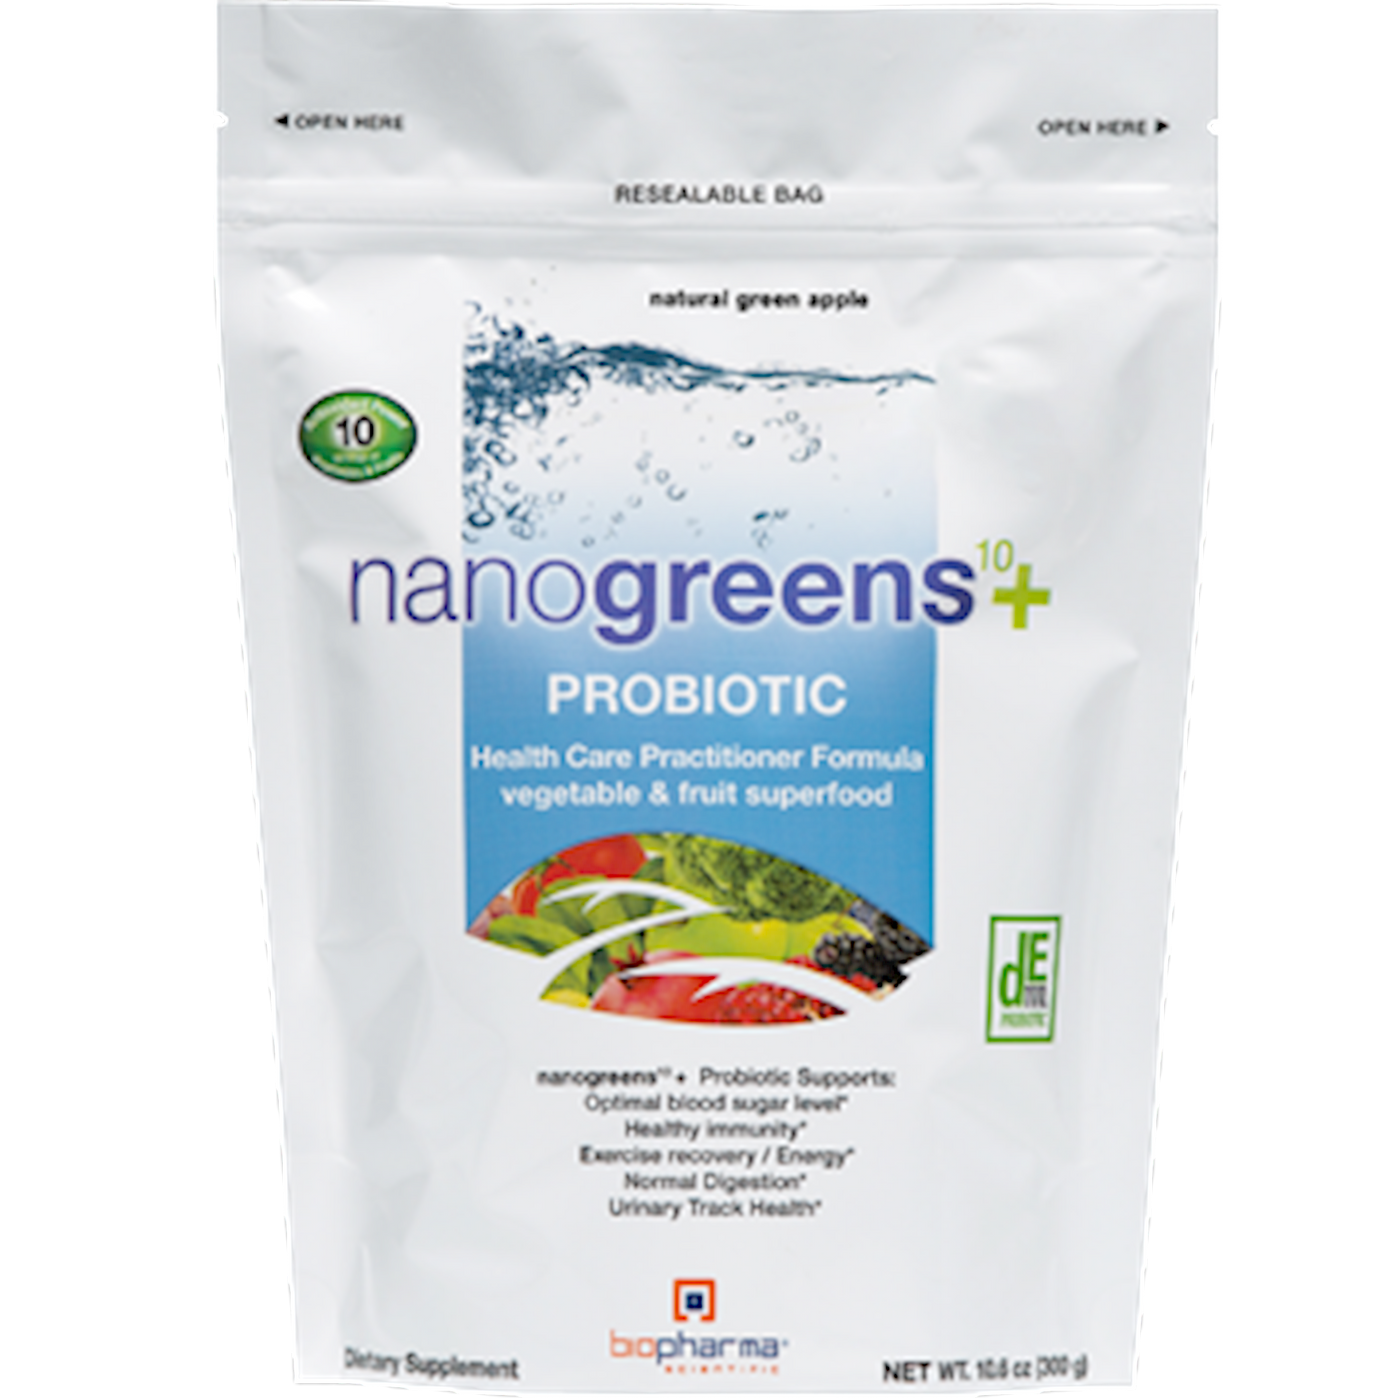 nanogreens10+probiotic Green App 30 srv Curated Wellness